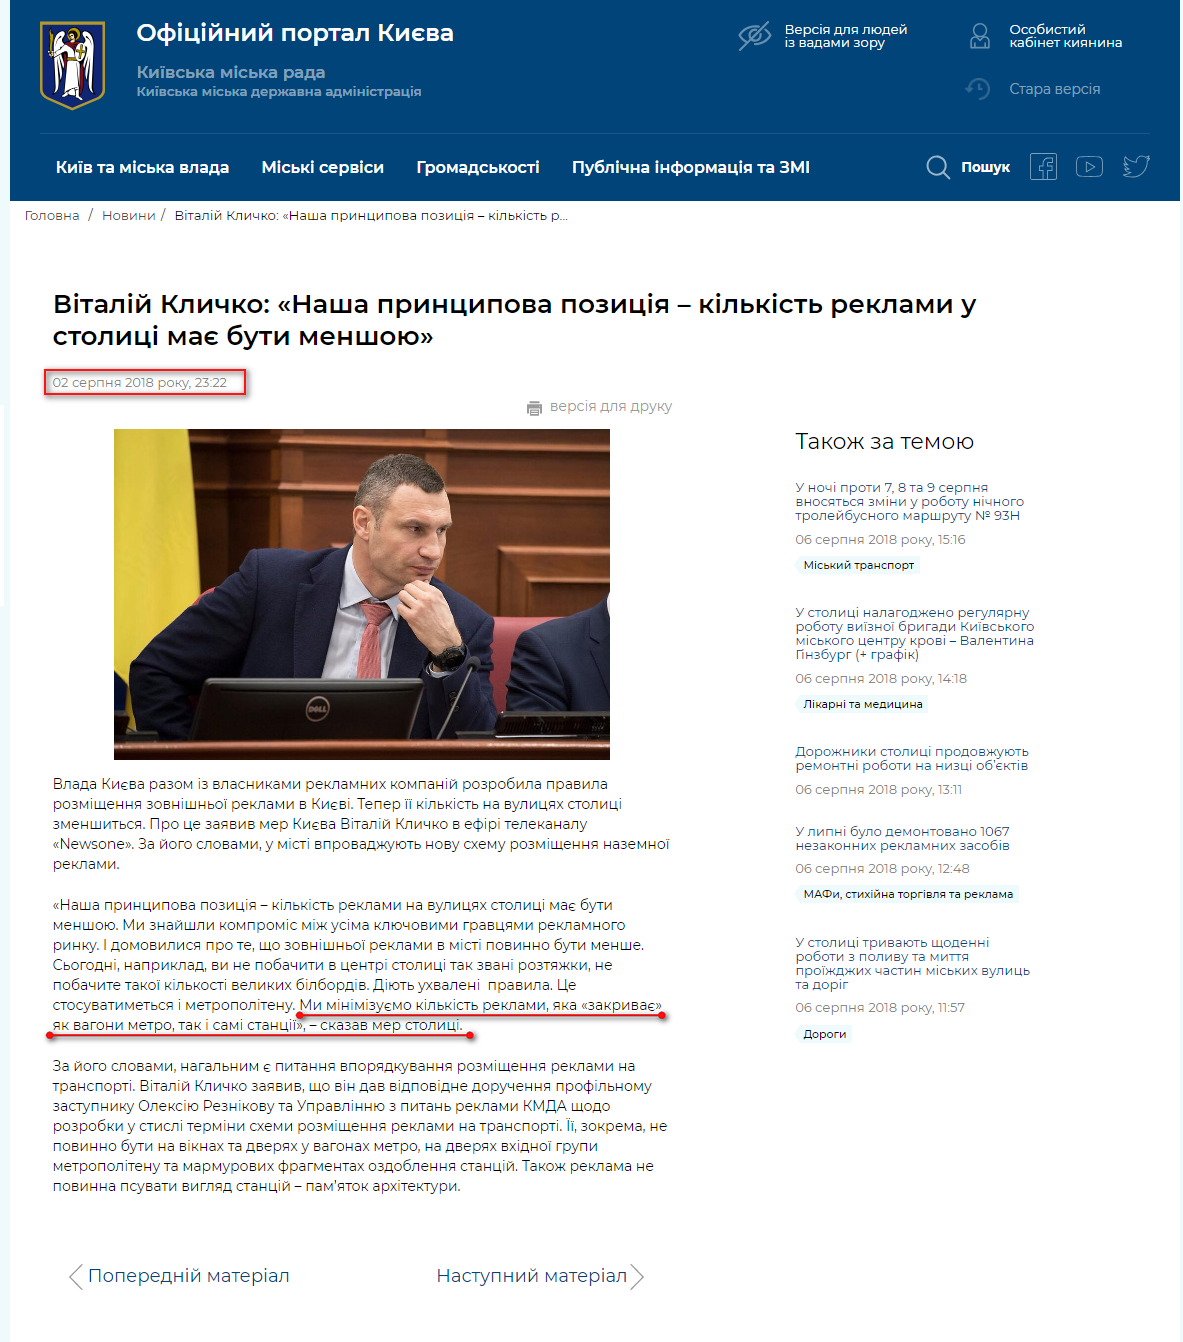 https://kyivcity.gov.ua/news/vitaliy_klichko_nasha_printsipova_pozitsiya__kilkist_reklami_u_stolitsi_maye_buti_menshoyu.html